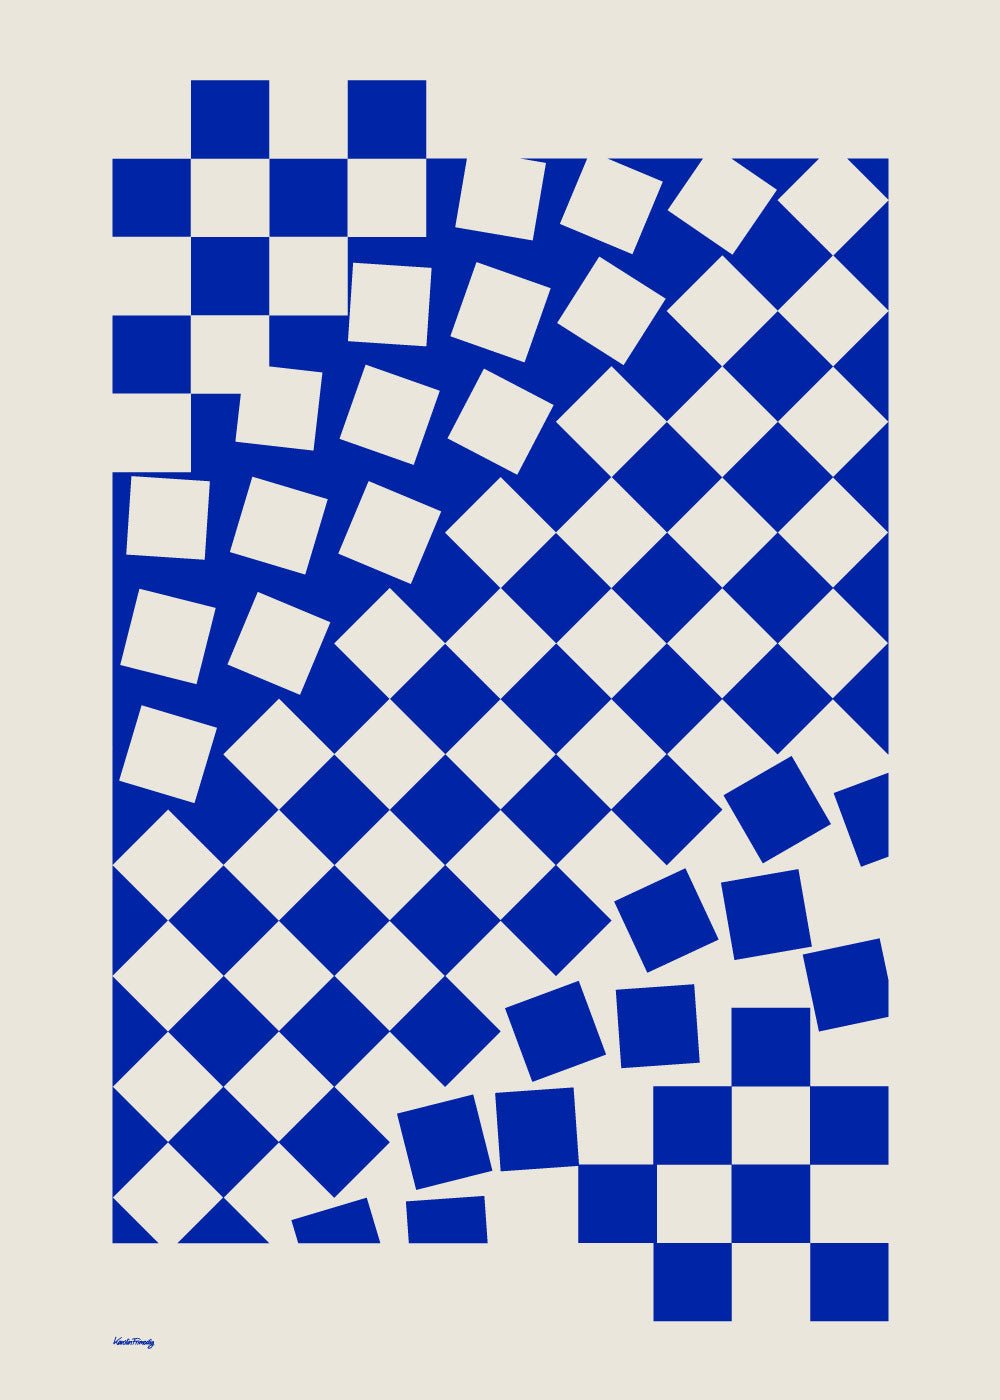 Blå poster med rutor som smiter från sitt uppdrag som mönster.